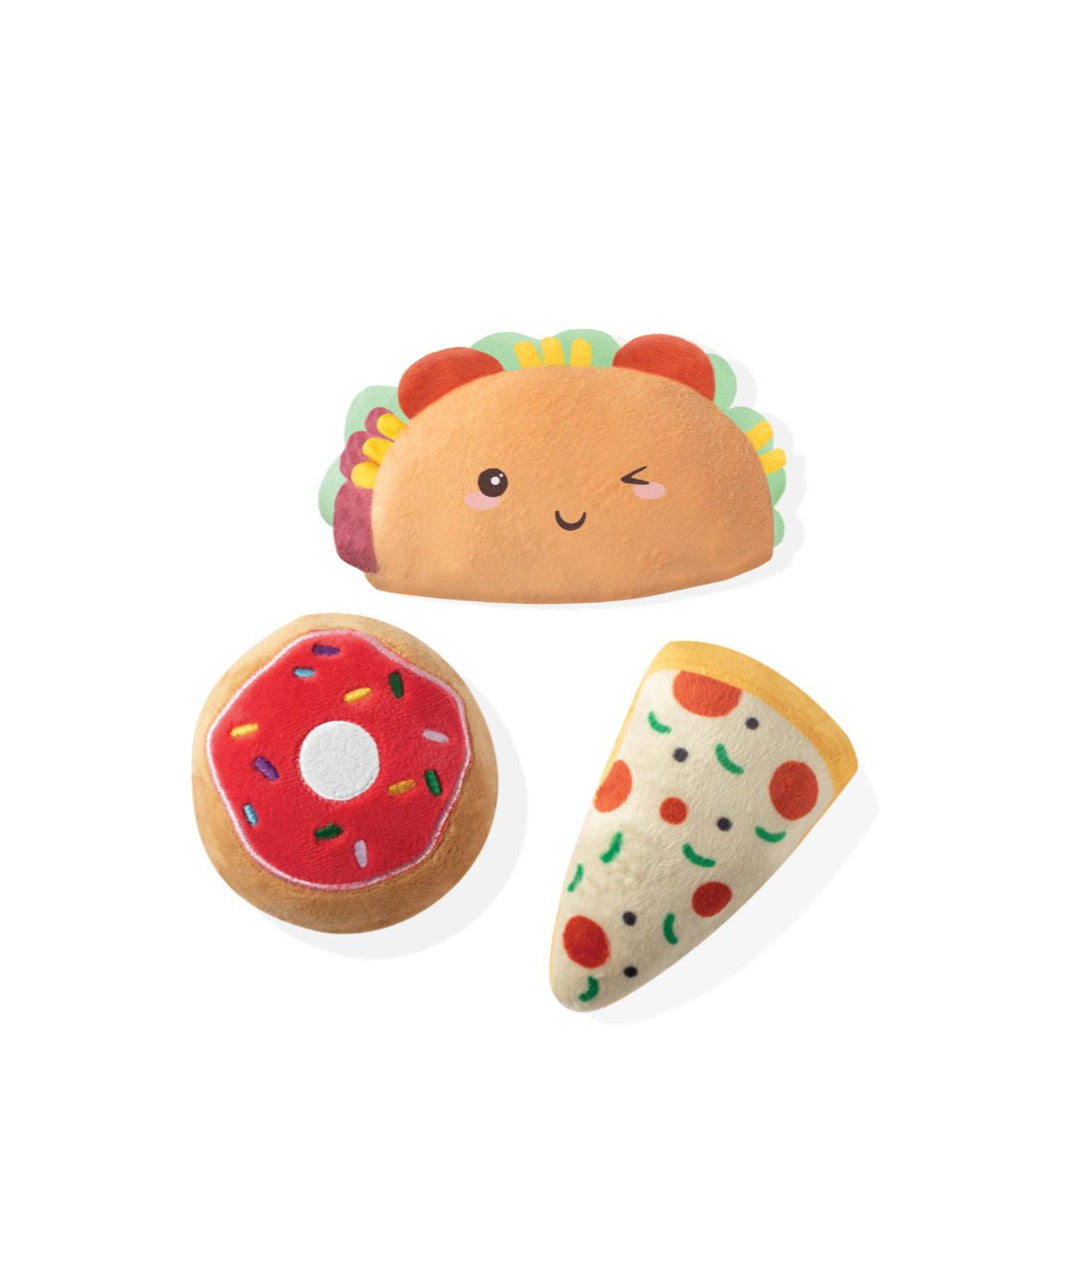 Fringe Studio Toy Box Mini Trendy Foods Squeaky Plush Toy